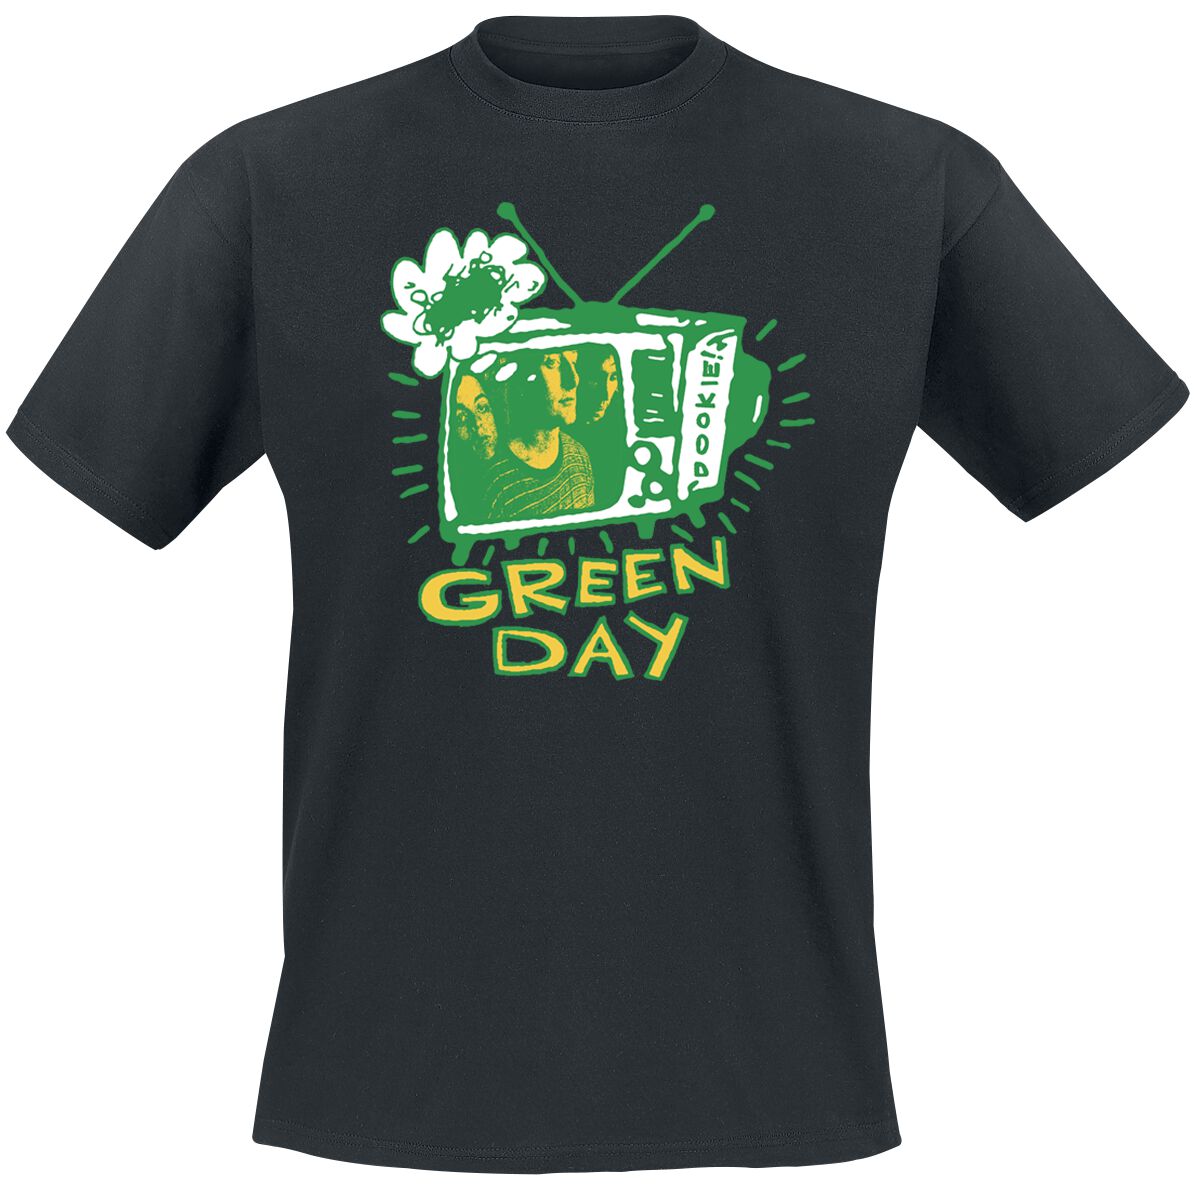 Green Day T-Shirt - Longview TV - S bis XXL - für Männer - Größe XL - schwarz  - Lizenziertes Merchandise!